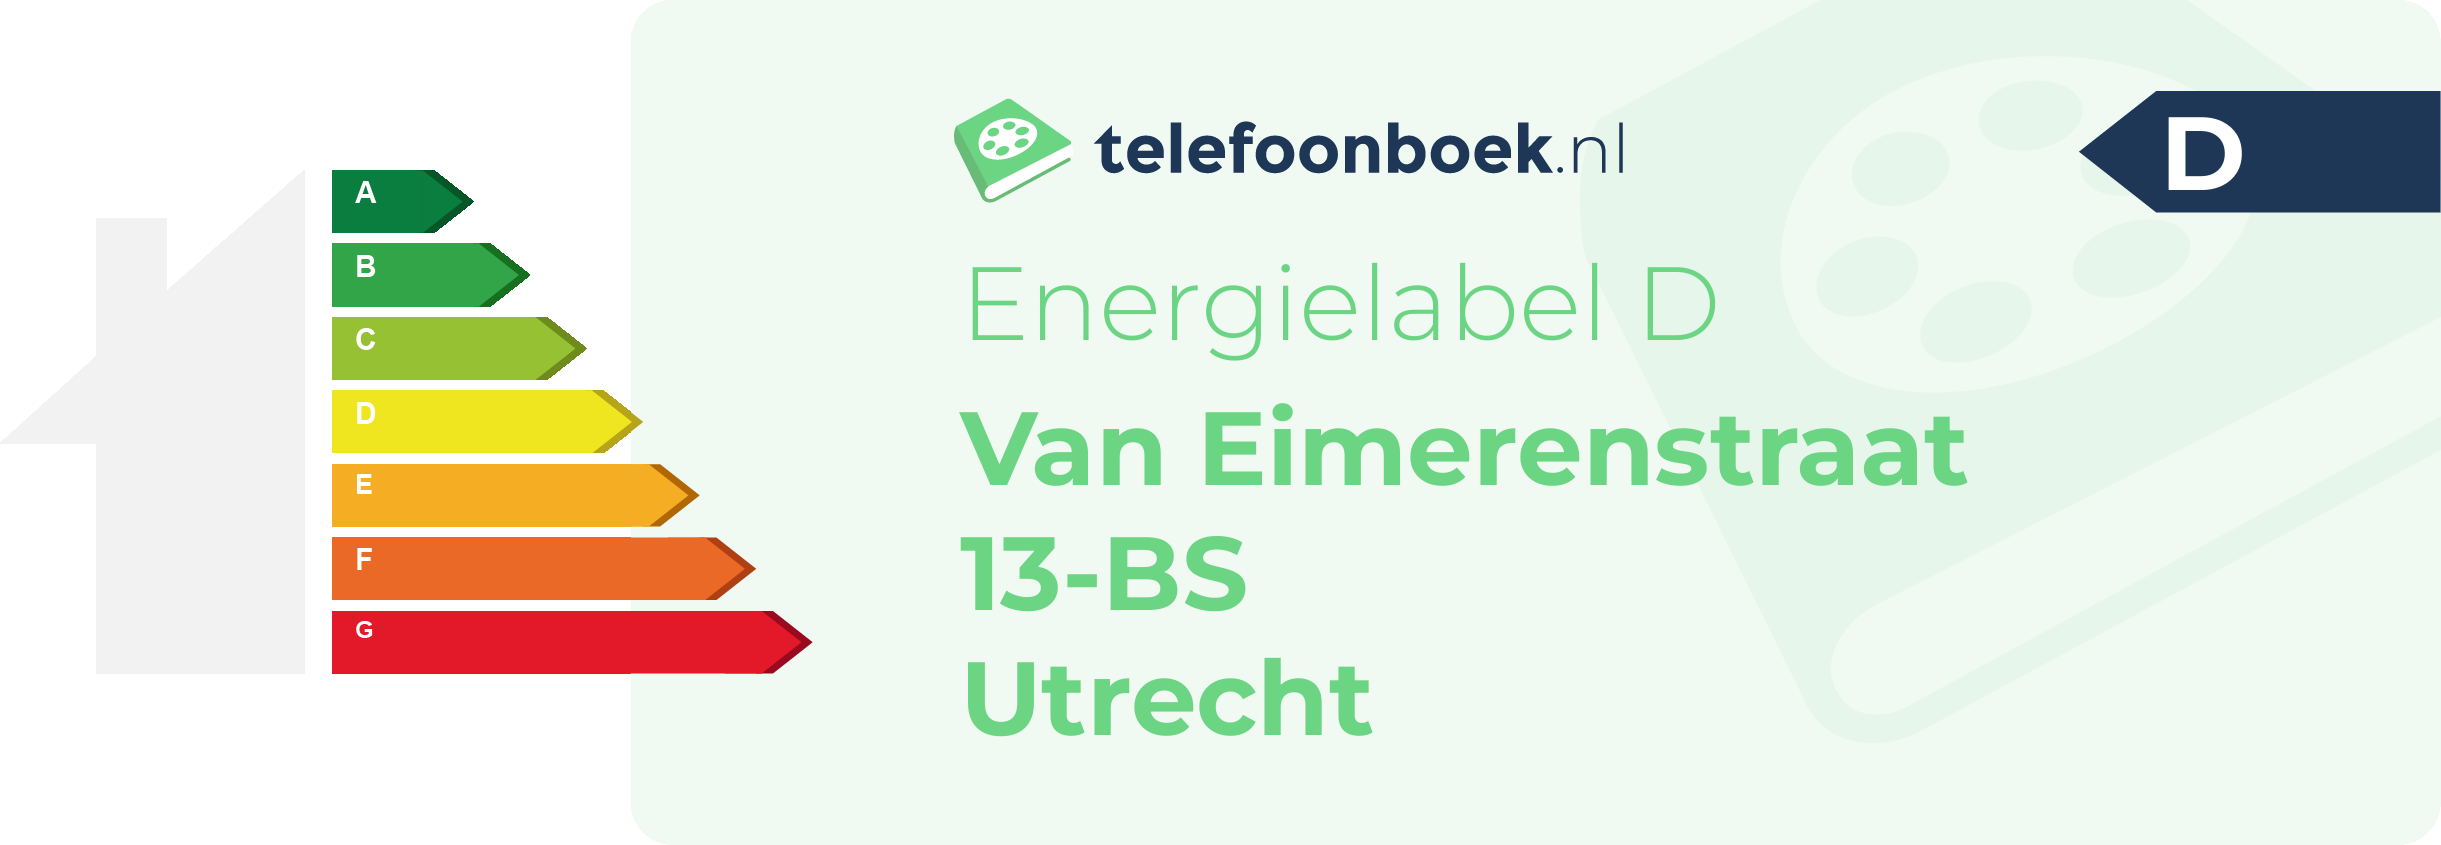 Energielabel Van Eimerenstraat 13-BS Utrecht